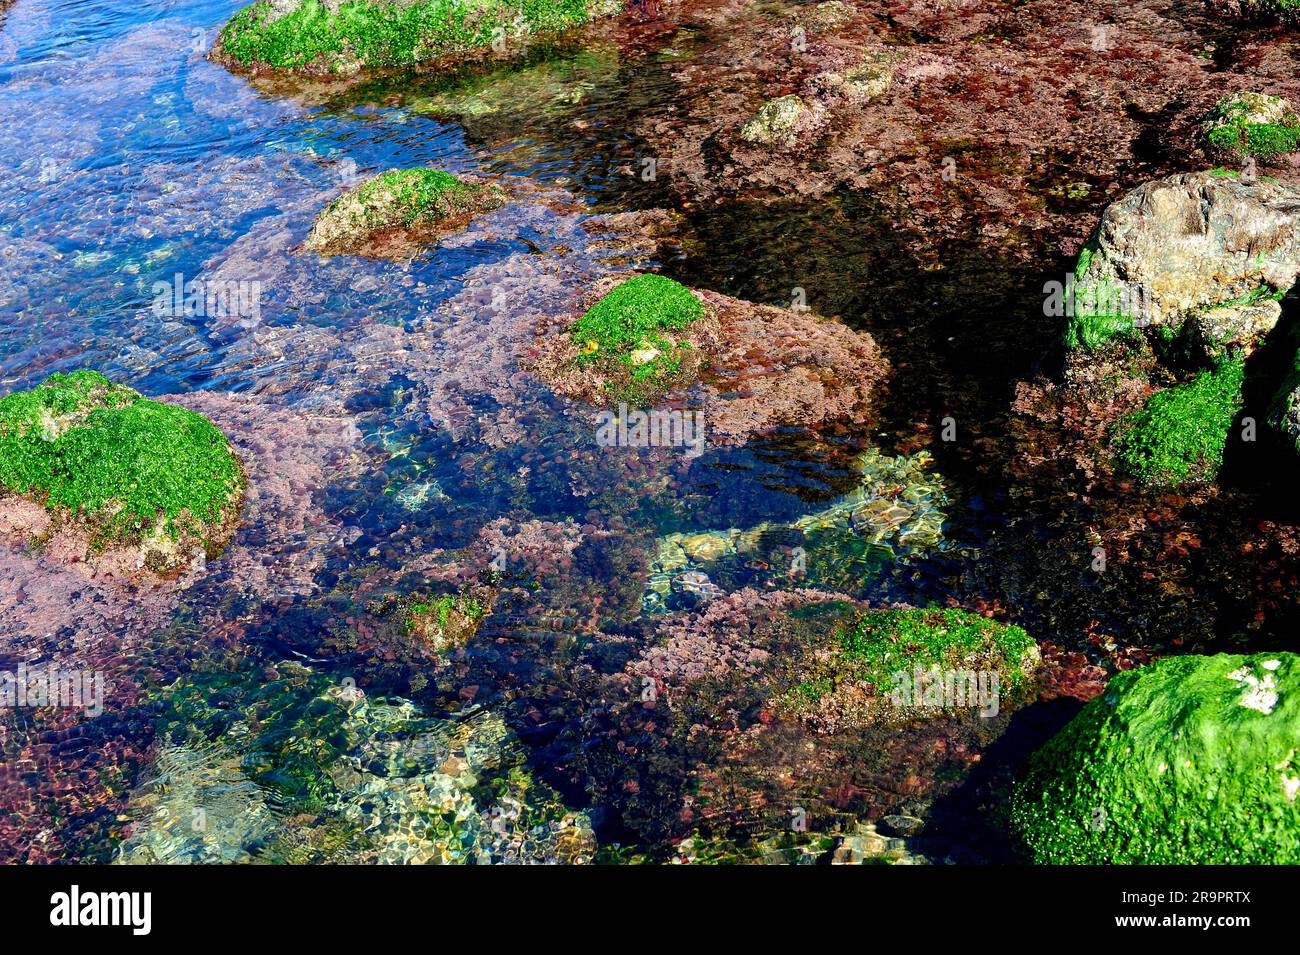 Seaweed in rocky coastline with sea lettuce (Ulva lactuca) and Corallina elongata. Costa Brava, Girona, Catalonia, Spain. Stock Photo